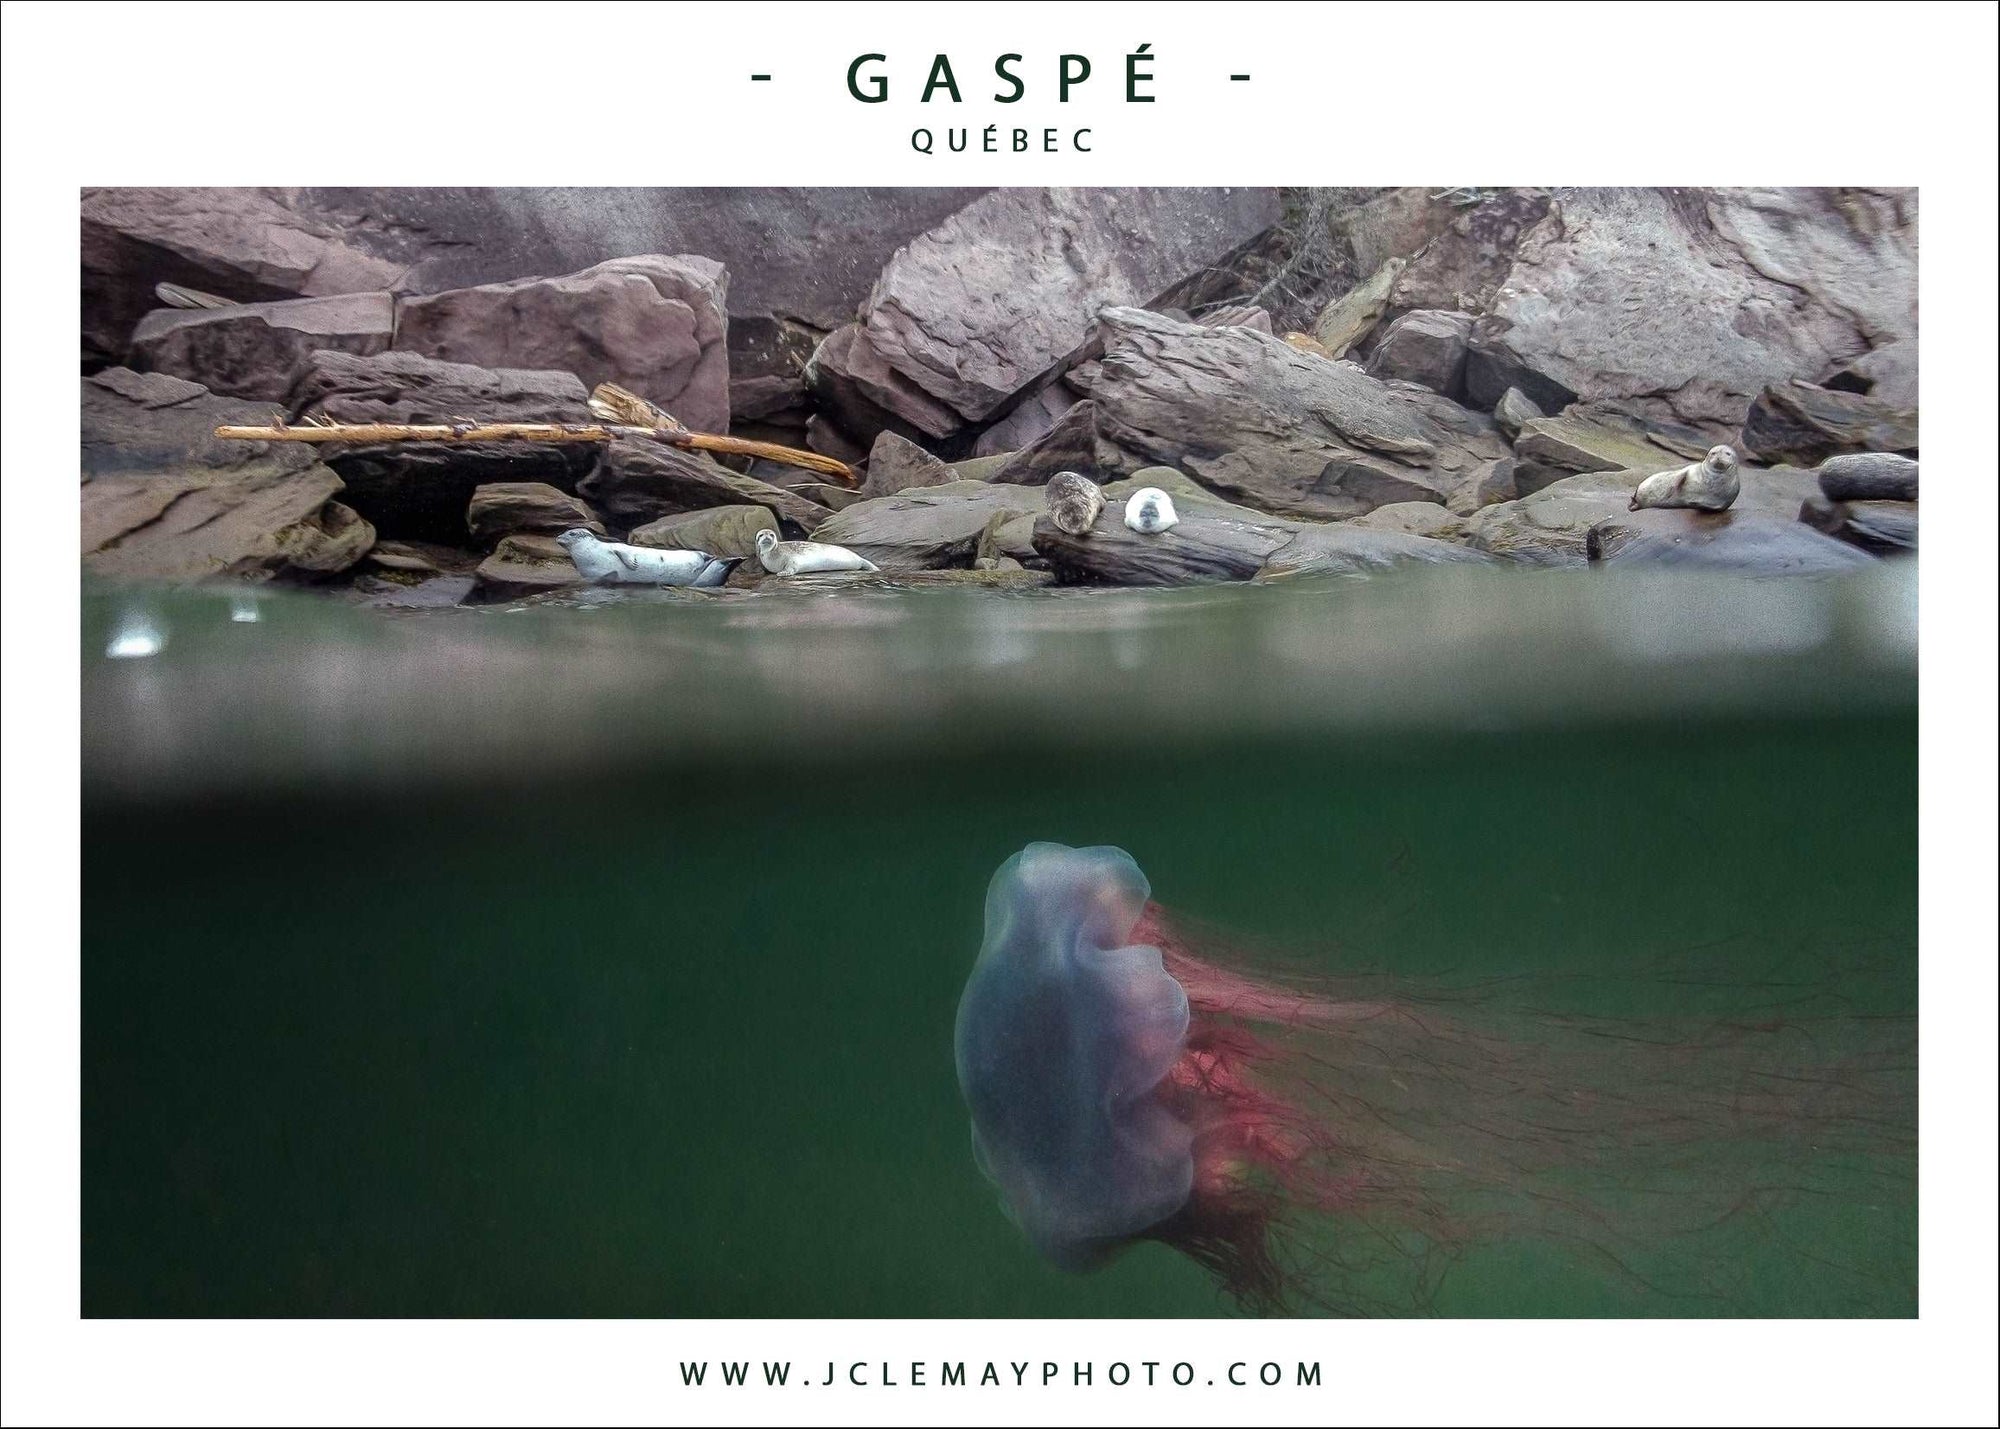 Carte postale d'une méduse et des phoques en Gaspésie, par Jc Lemay Photo